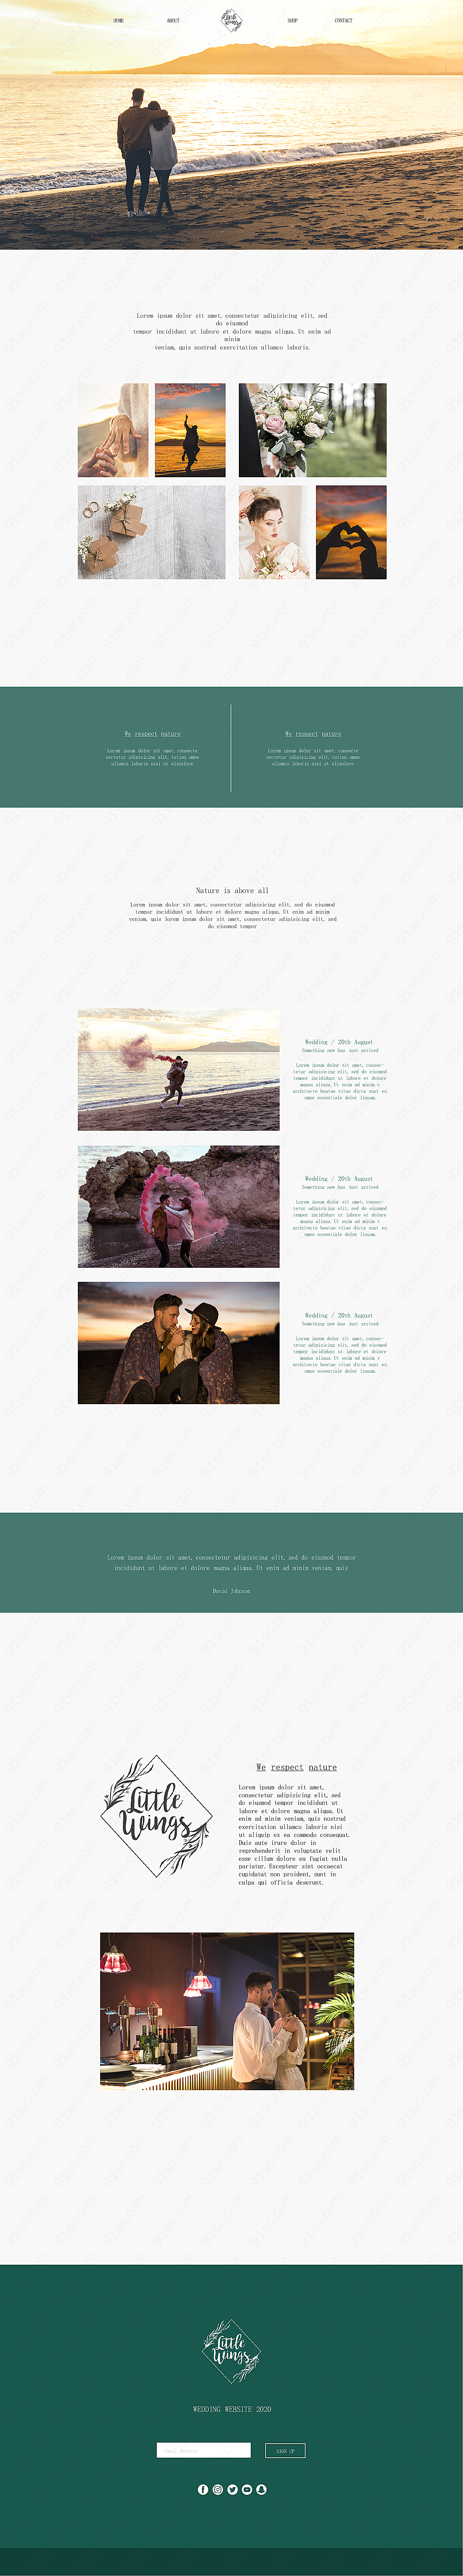 婚礼网页设计模板psd素材网页元素